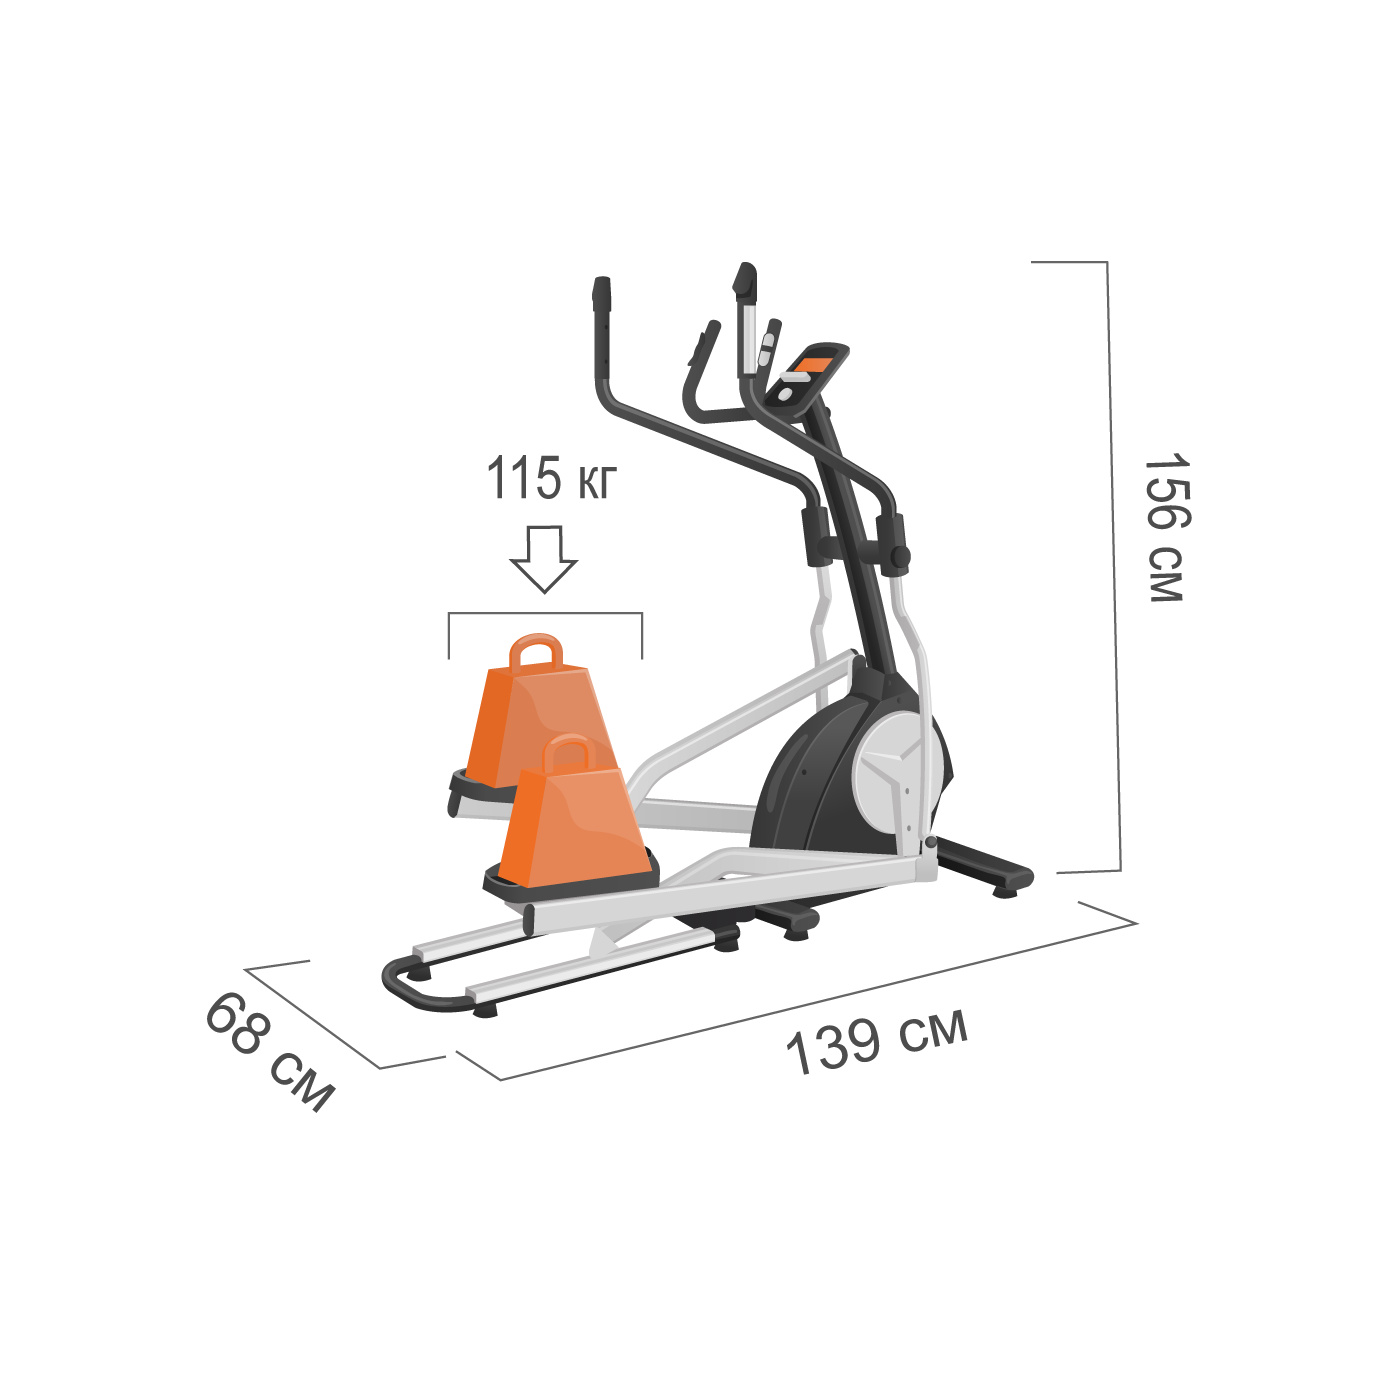 Proxima Panda макс. вес пользователя, кг - 115